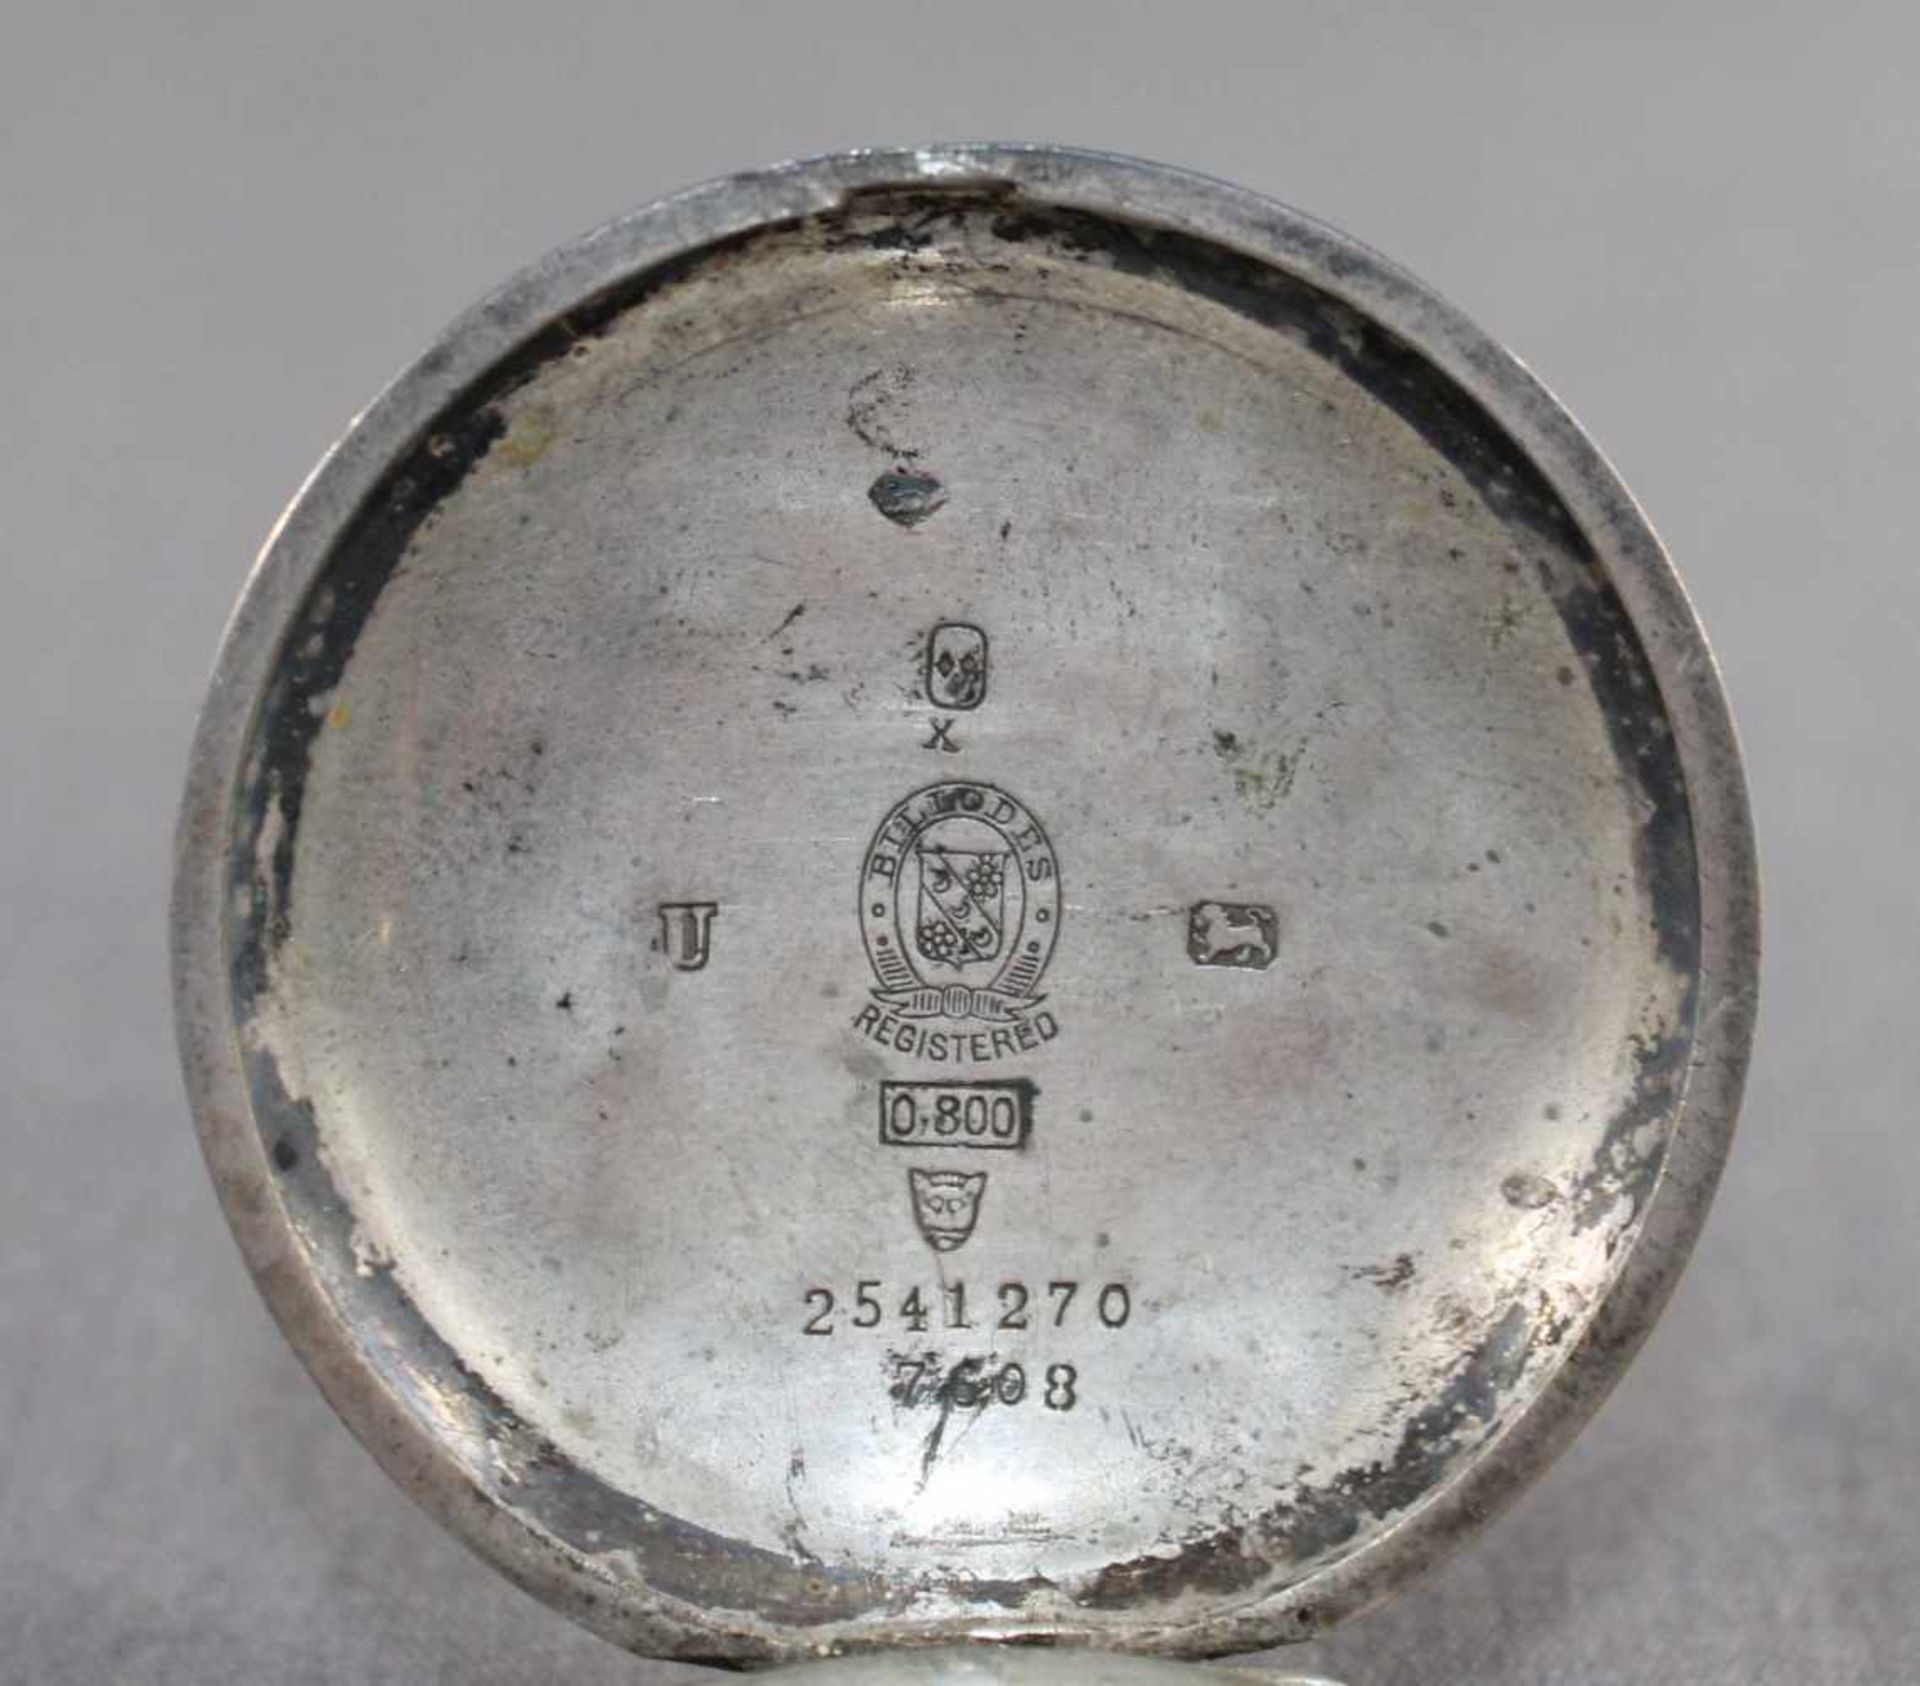 1 Savonette Silber (800/000), Punzen u.a. Billodes, No. 25412707608 "K. Serikoffs & Co - Bild 3 aus 6